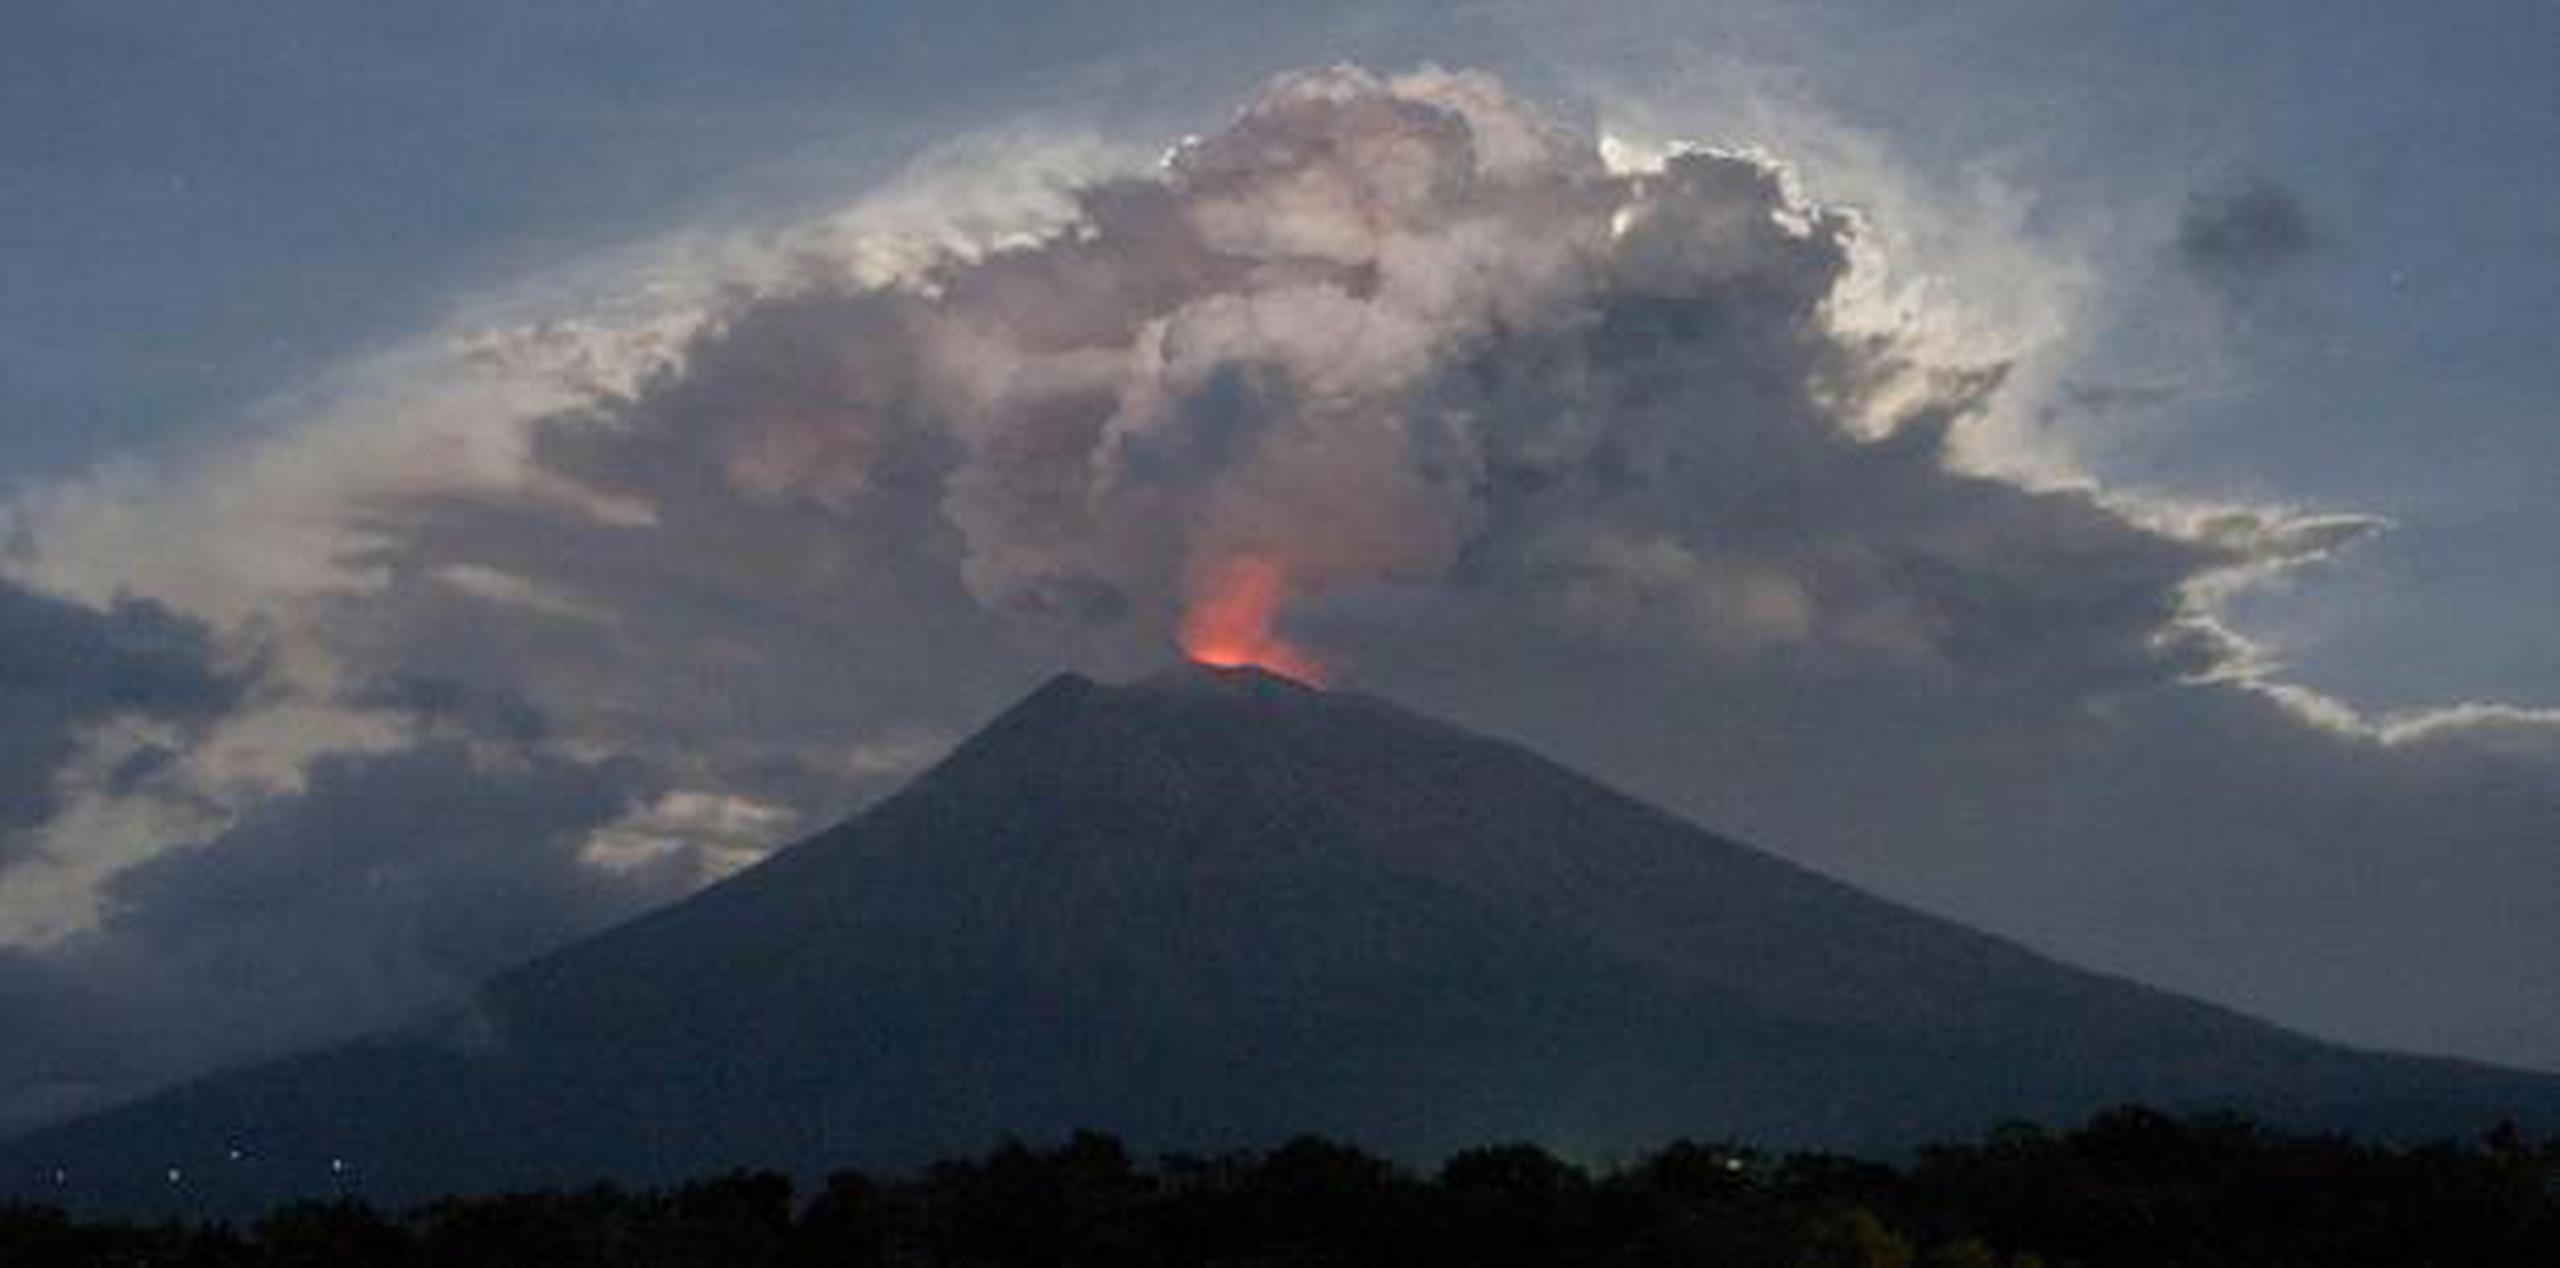 La última vez que el Agung hizo una erupción fuerte fue en 1963. (AP)